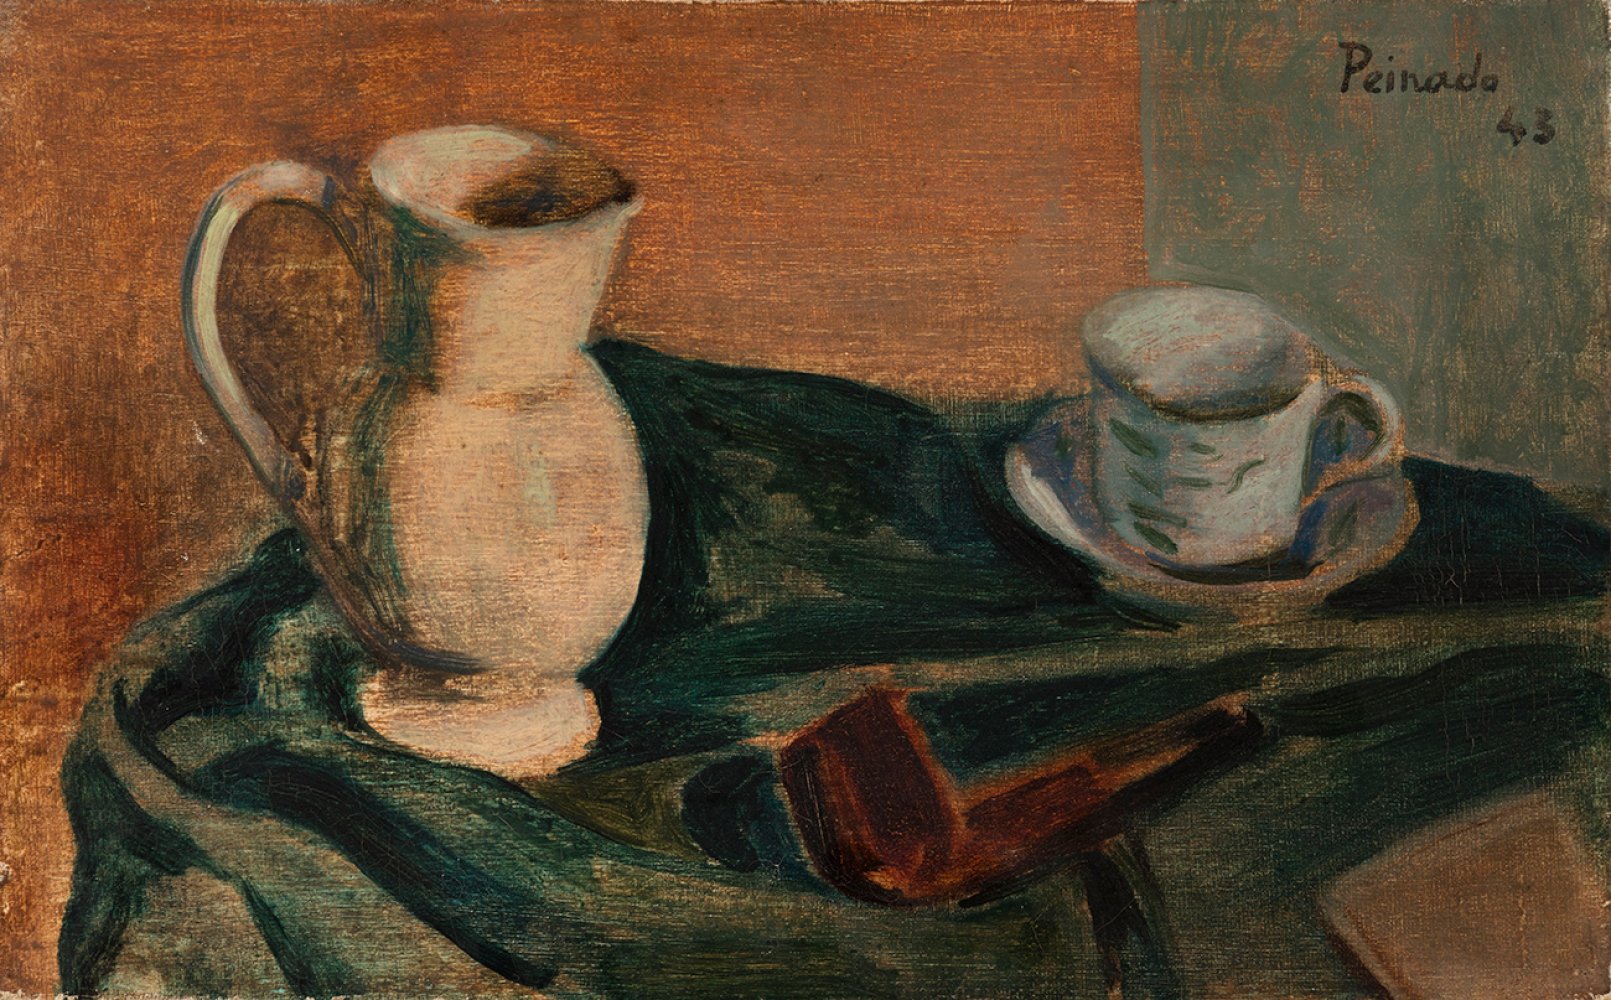 JOAQUÍN PEINADO (Ronda, Malaga, 1898 - Paris, 1975)."Composition with a Pipe", 1943.Oil on canvas.